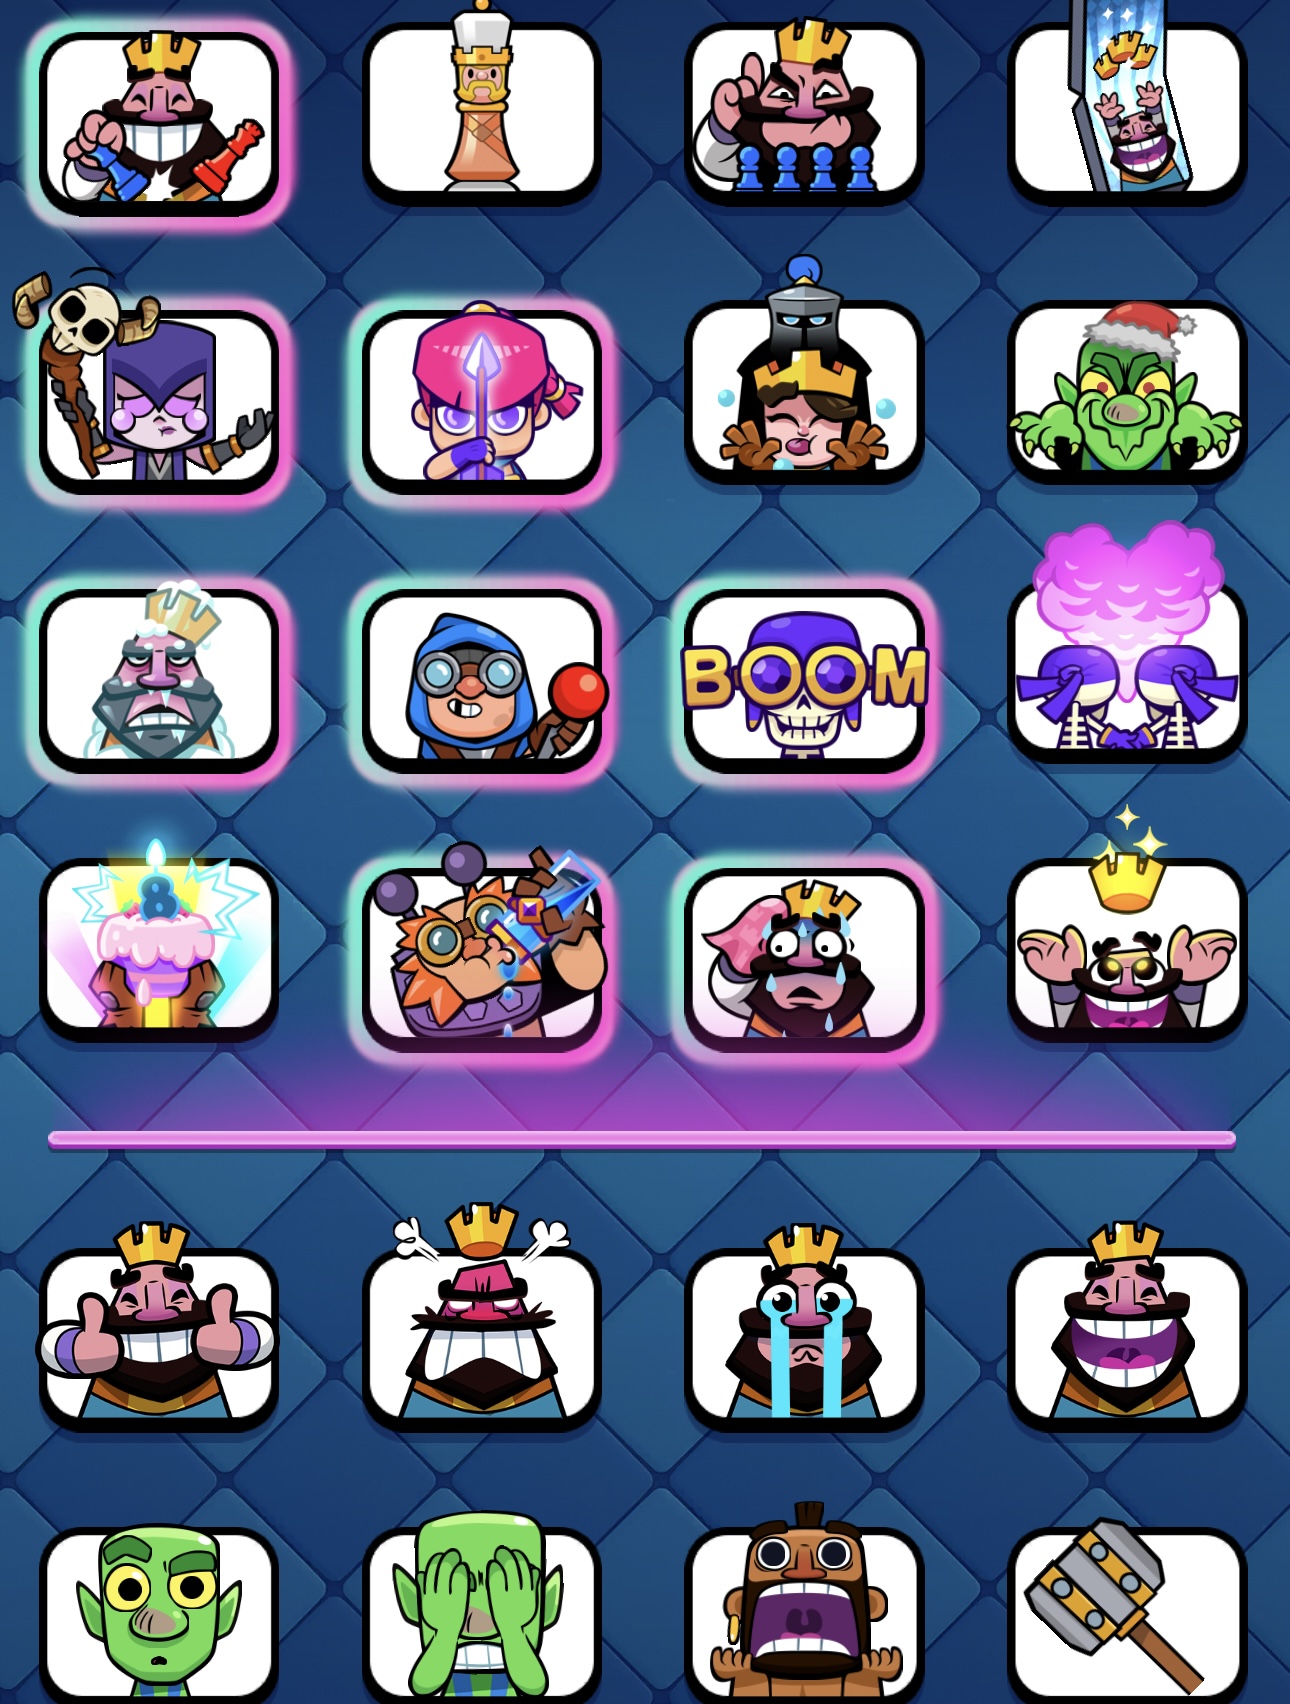 Super gestapelte Clash Royale Konto 9000tr 100+ Emotes Level 15 King Tower und Karten und vieles mehr!